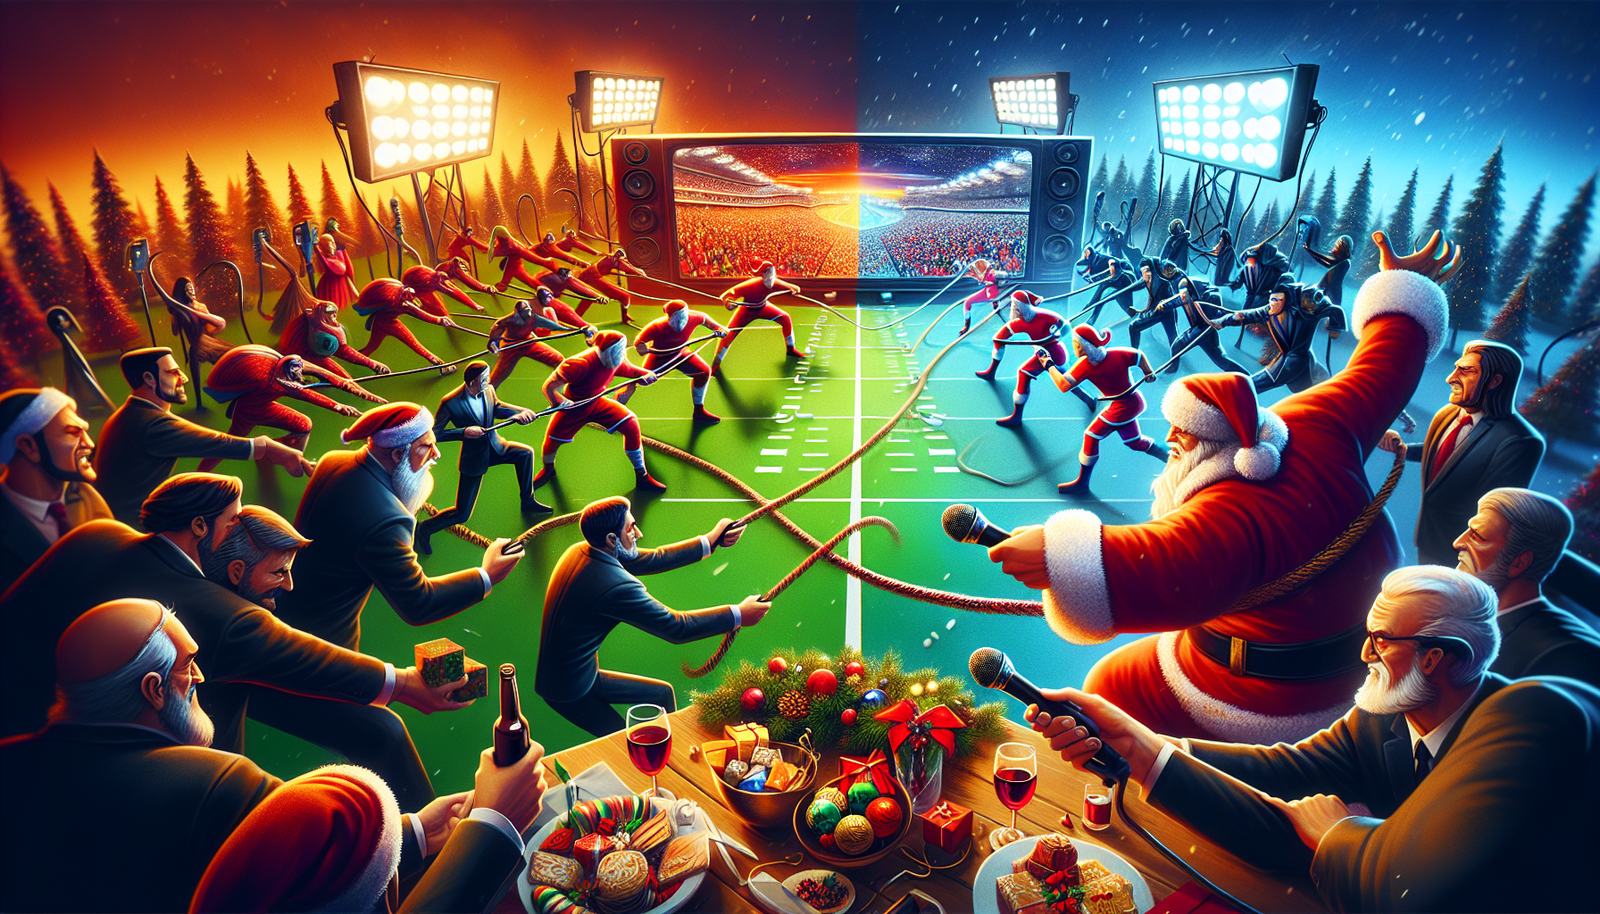 Finden Sie mit dieser wichtigen Analyse heraus, ob Werbetreibende die NFL-Weihnachtsspiele von Netflix gefährden werden.